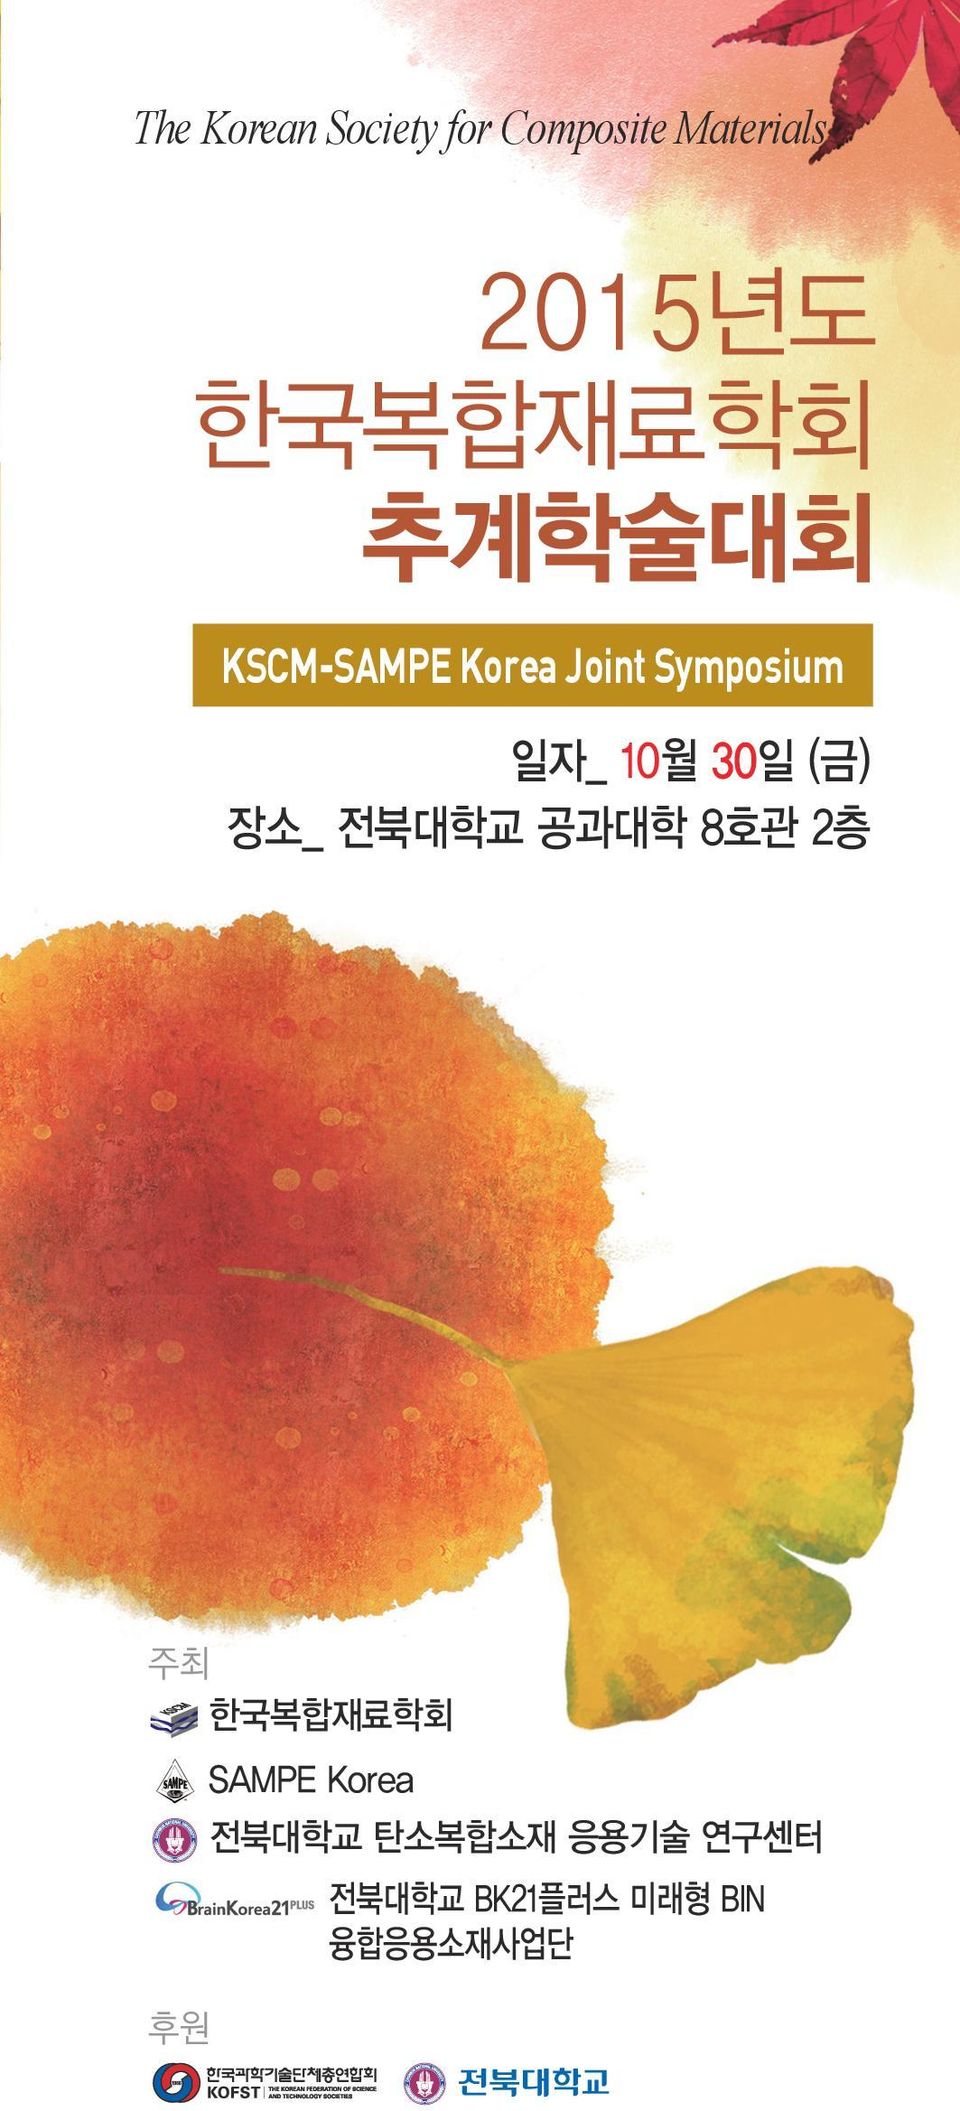 공과대학 8호관 2층 주최 한국복합재료학회 후원 SAMPE Korea